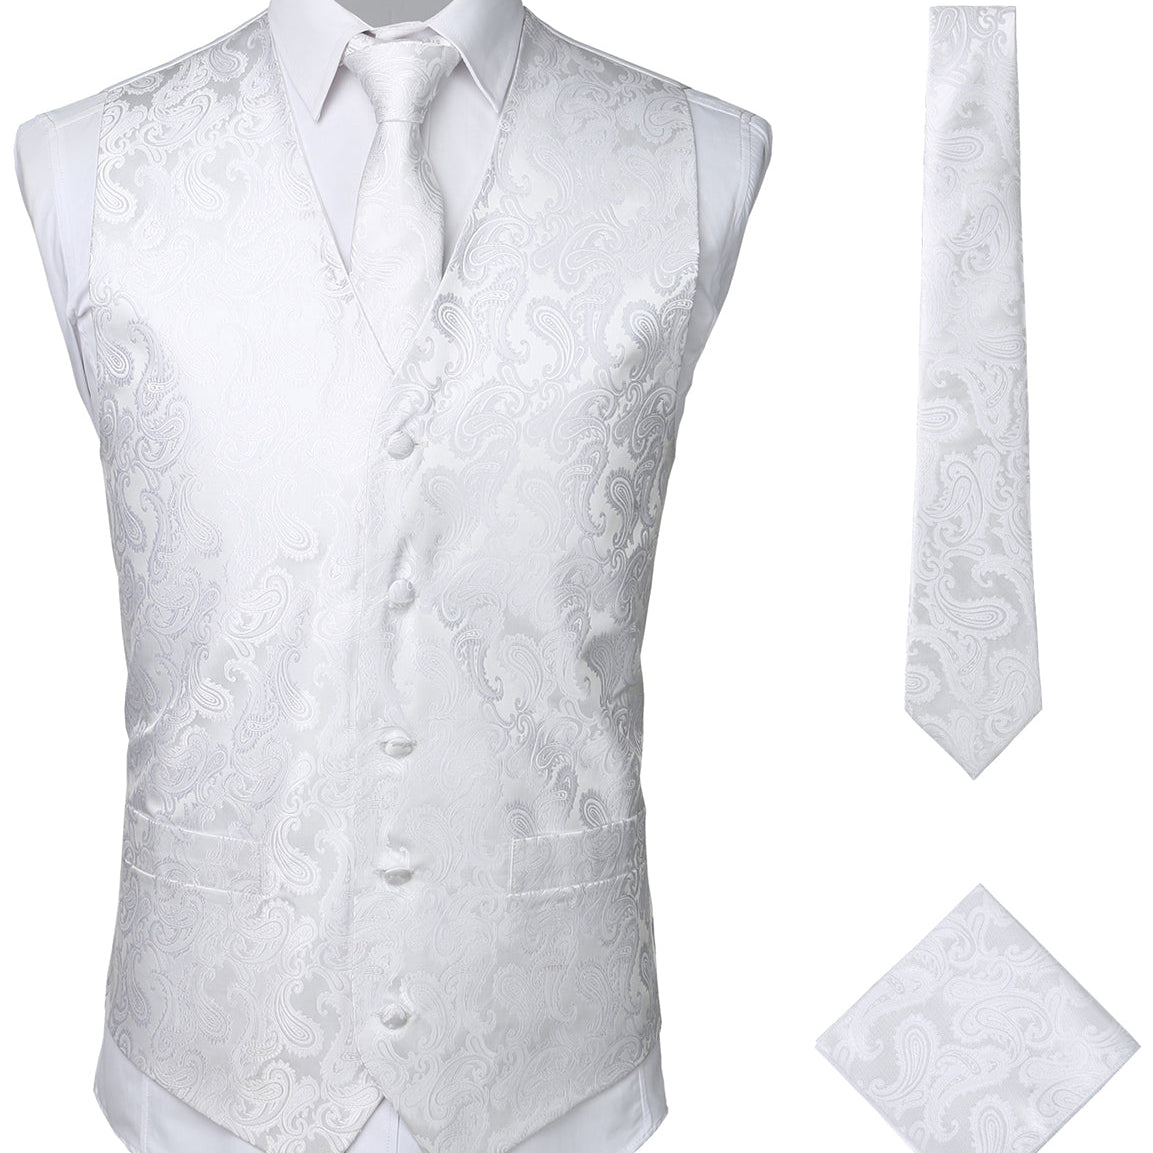 Men's 3pc Jacquard Paisley Vest & Tie Set Classic Necktie Pocket Square Waistcoat for Suit or Tuxedo